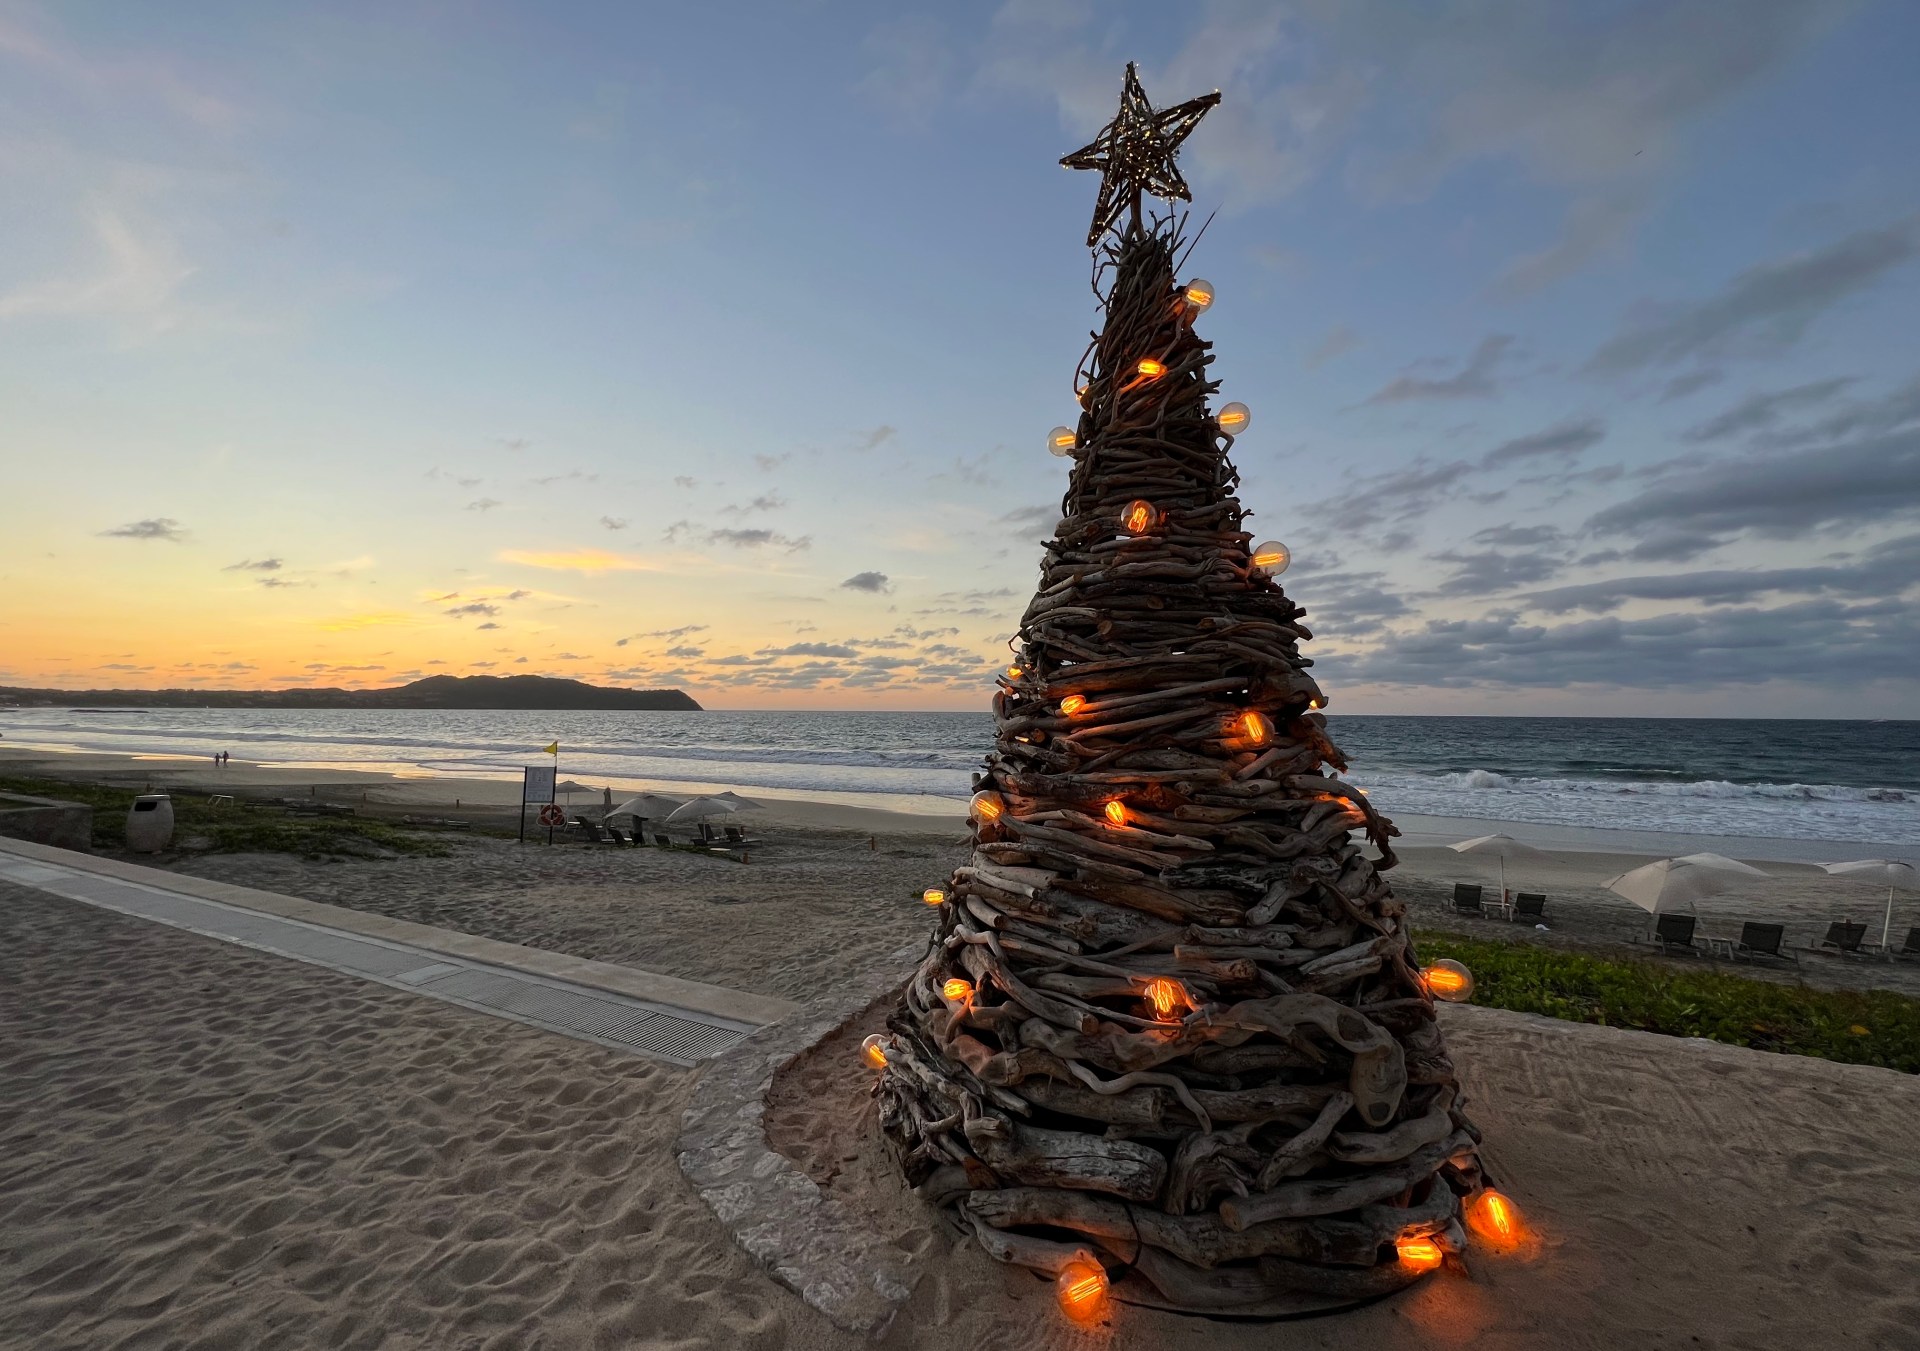 Christmas tree made out of driftwood, Conrad Punta de Mita beach